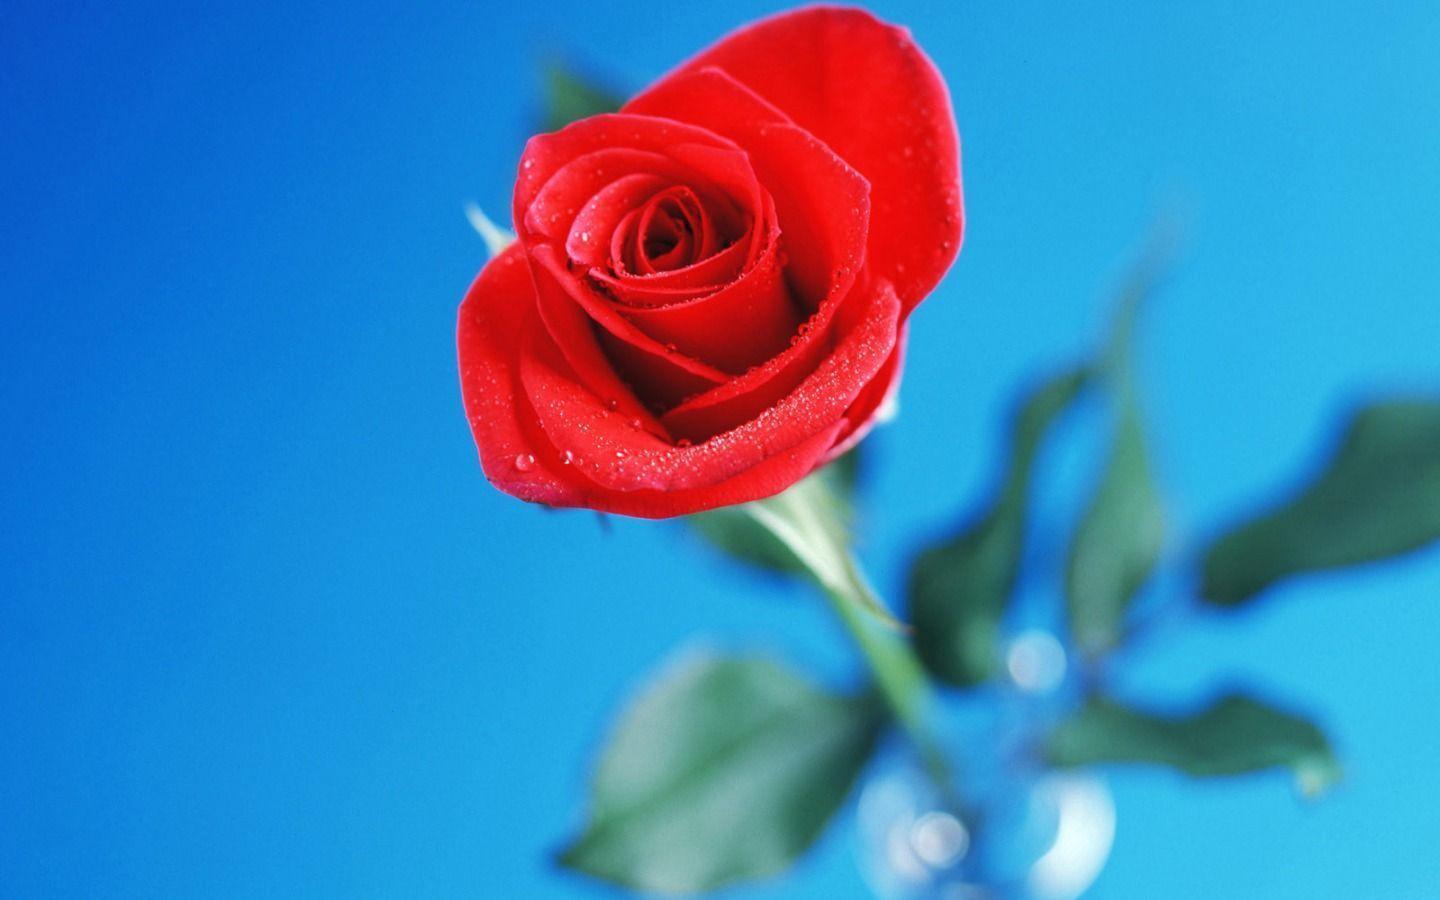 BST 99 Hình nền Hoa Hồng đẹp nhất gửi tặng người yêu